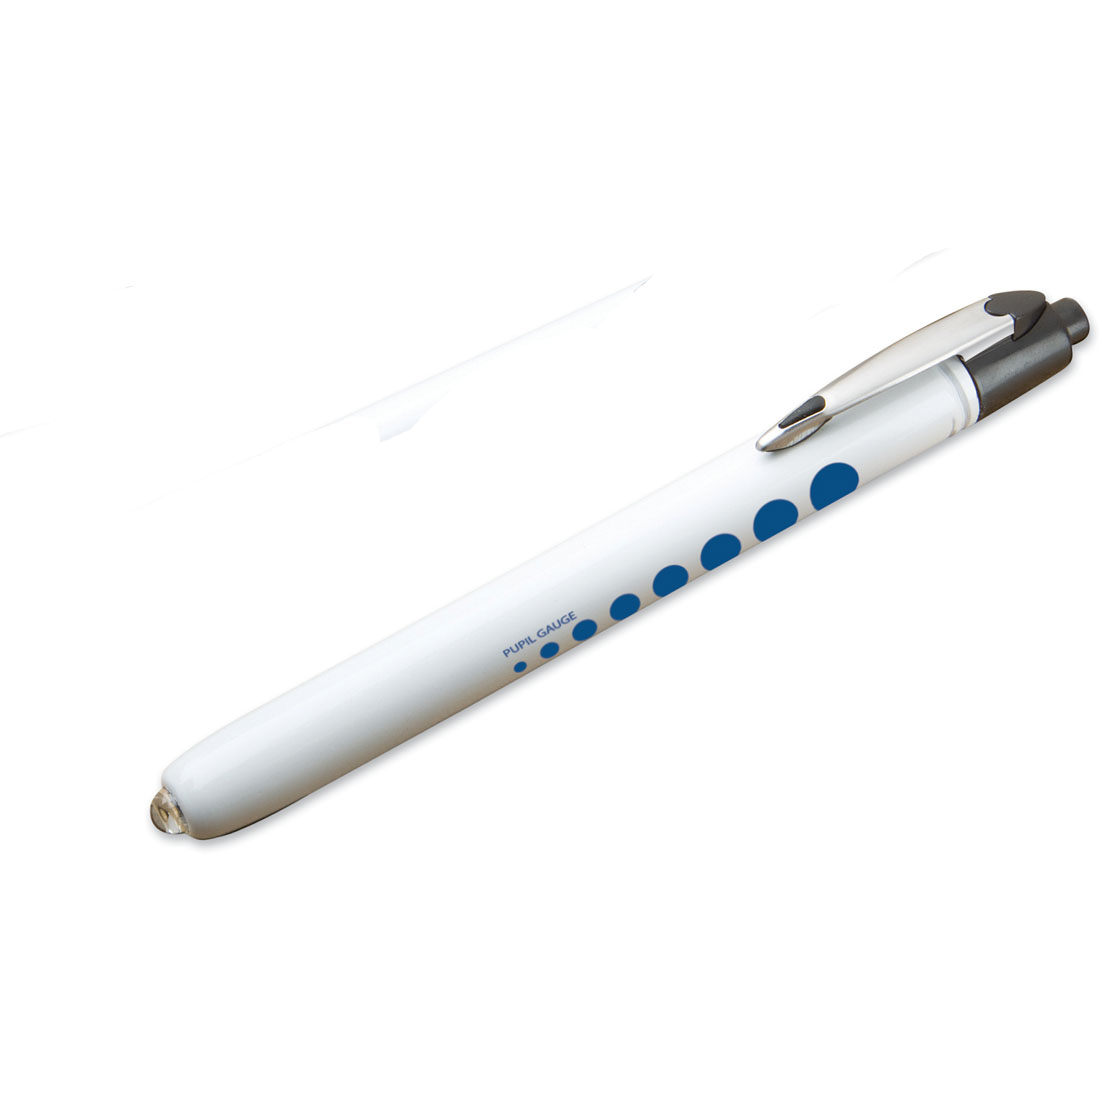 METALITE Reuseable Penlight White barrel-